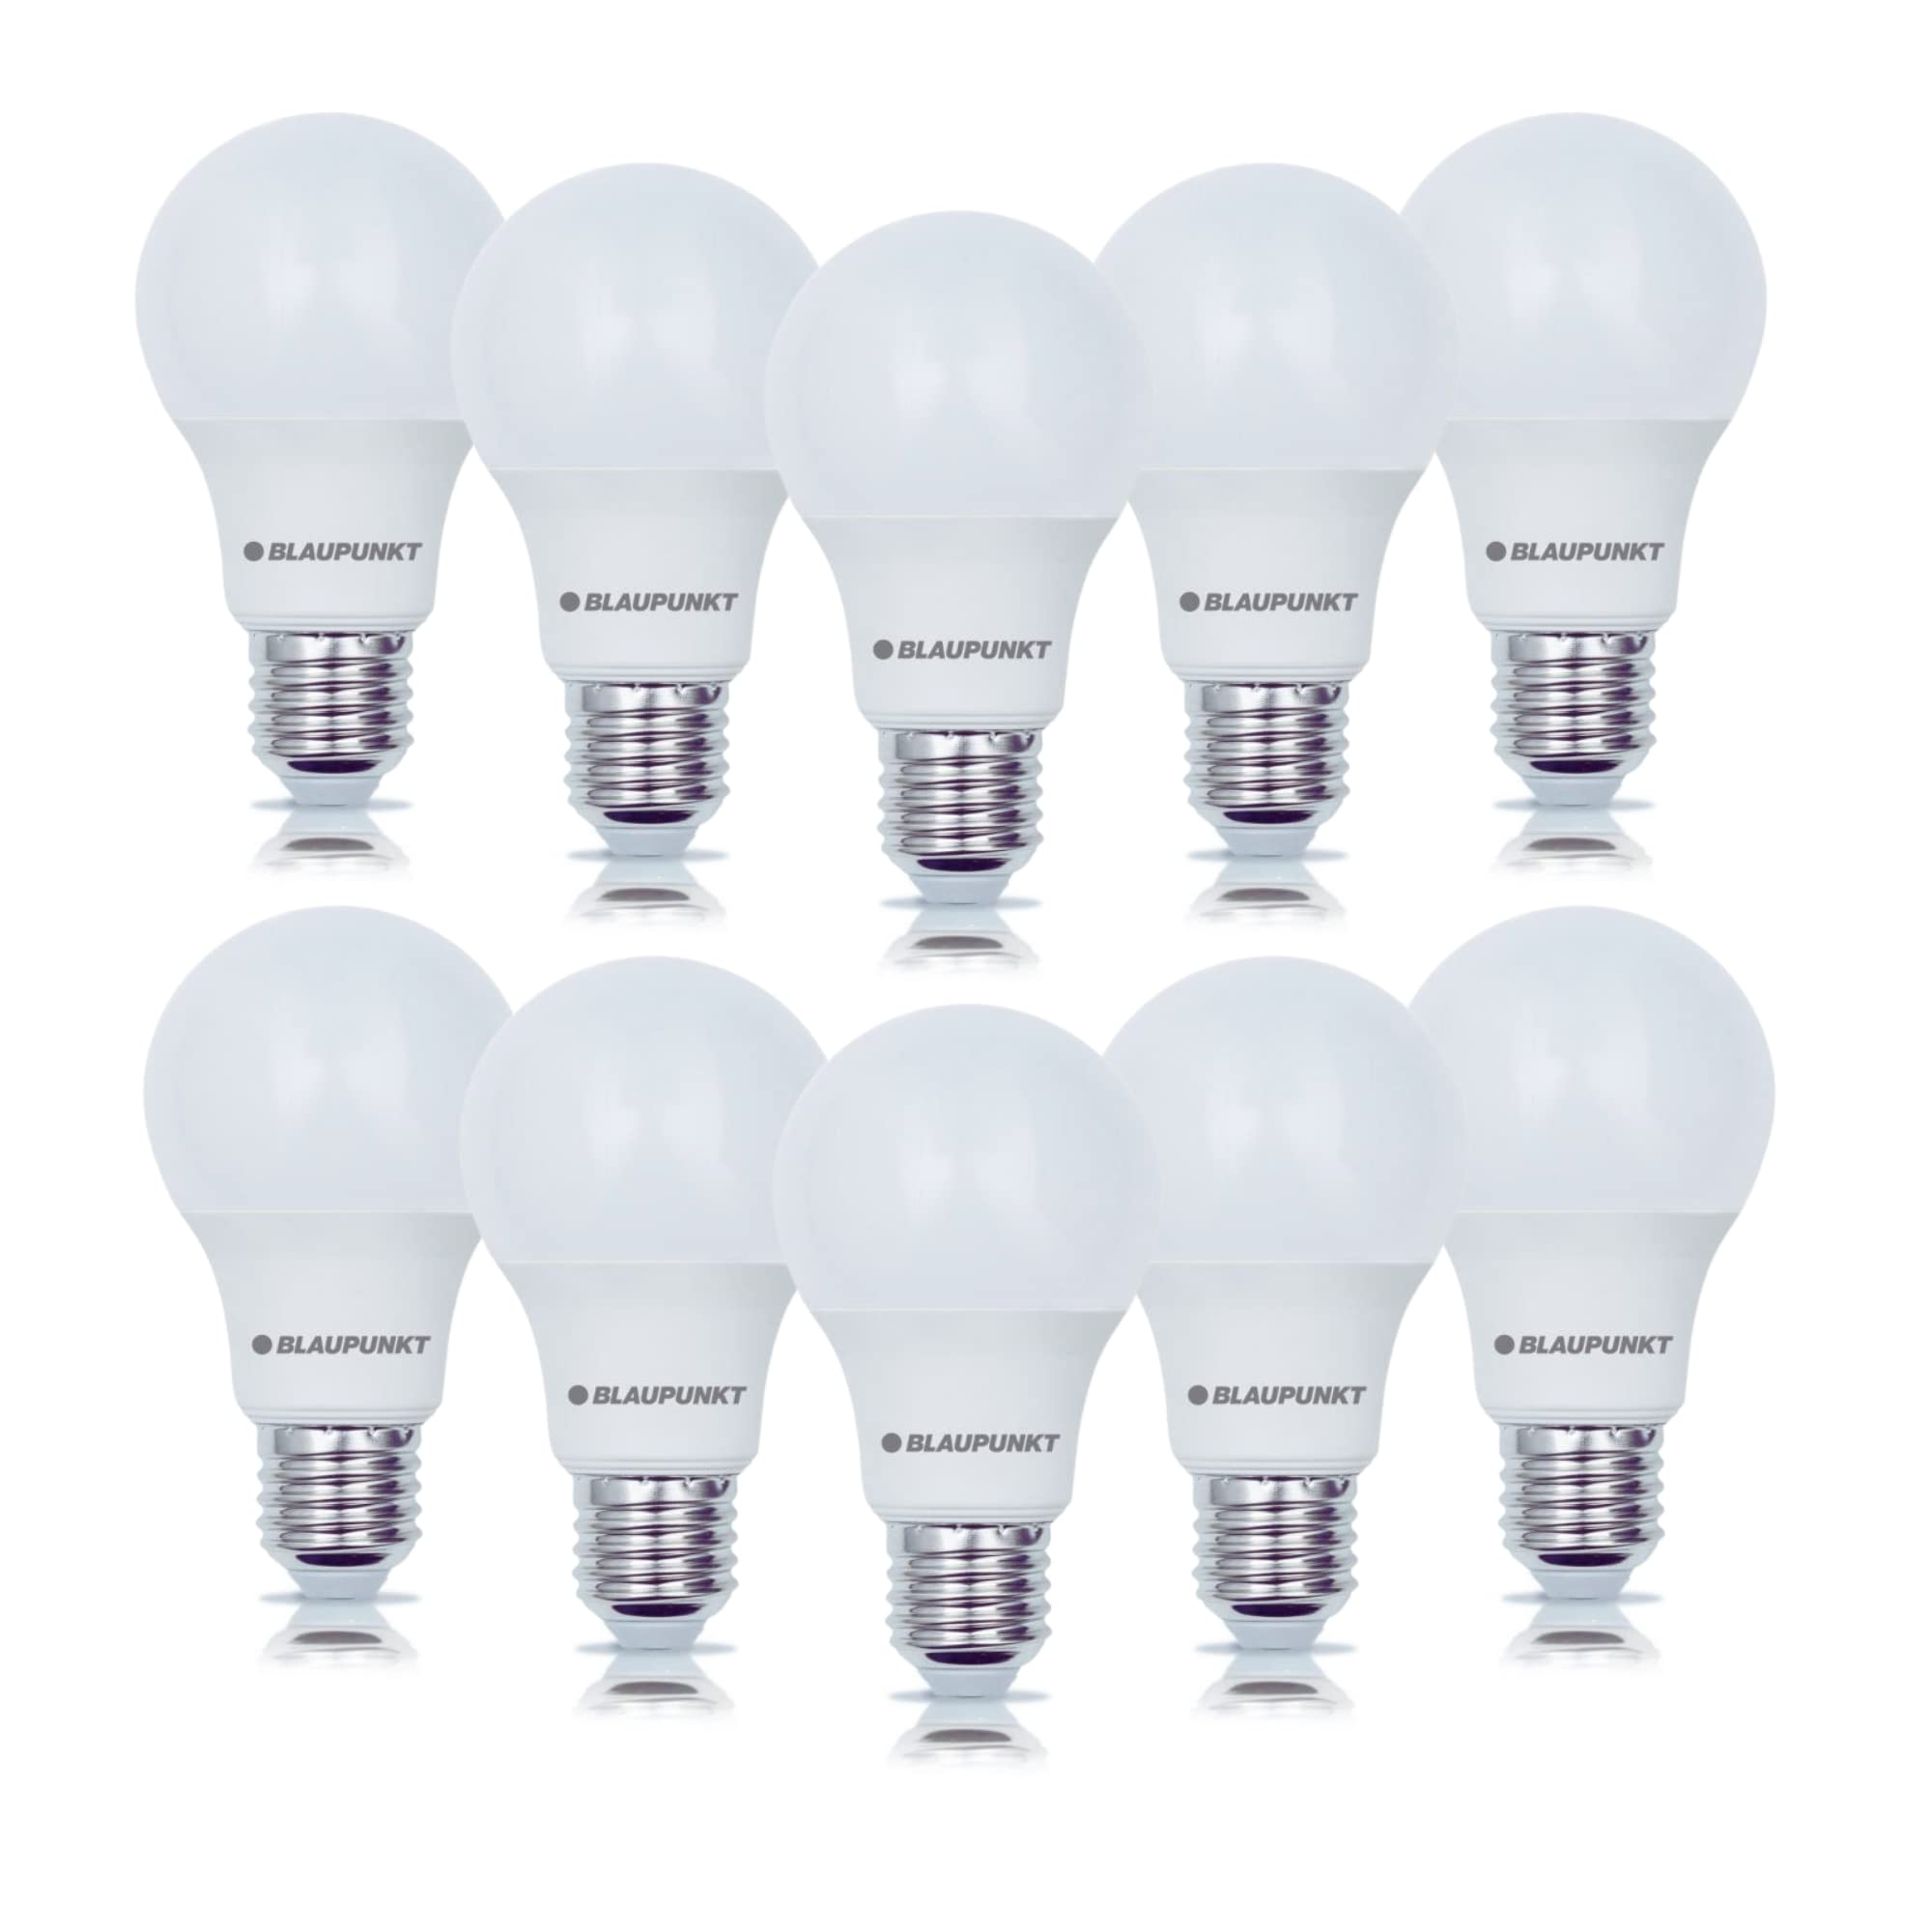 Blaupunkt LED E27 Birne - Classic - LED-Leuchtmittel - Raumbeleuchtung - 12W - Ersatz für 86W Glühbirne - Warmweiß 2700K - Lampe - Energie- und Kostensparendes Licht - Led Lampen - 10-er Pack